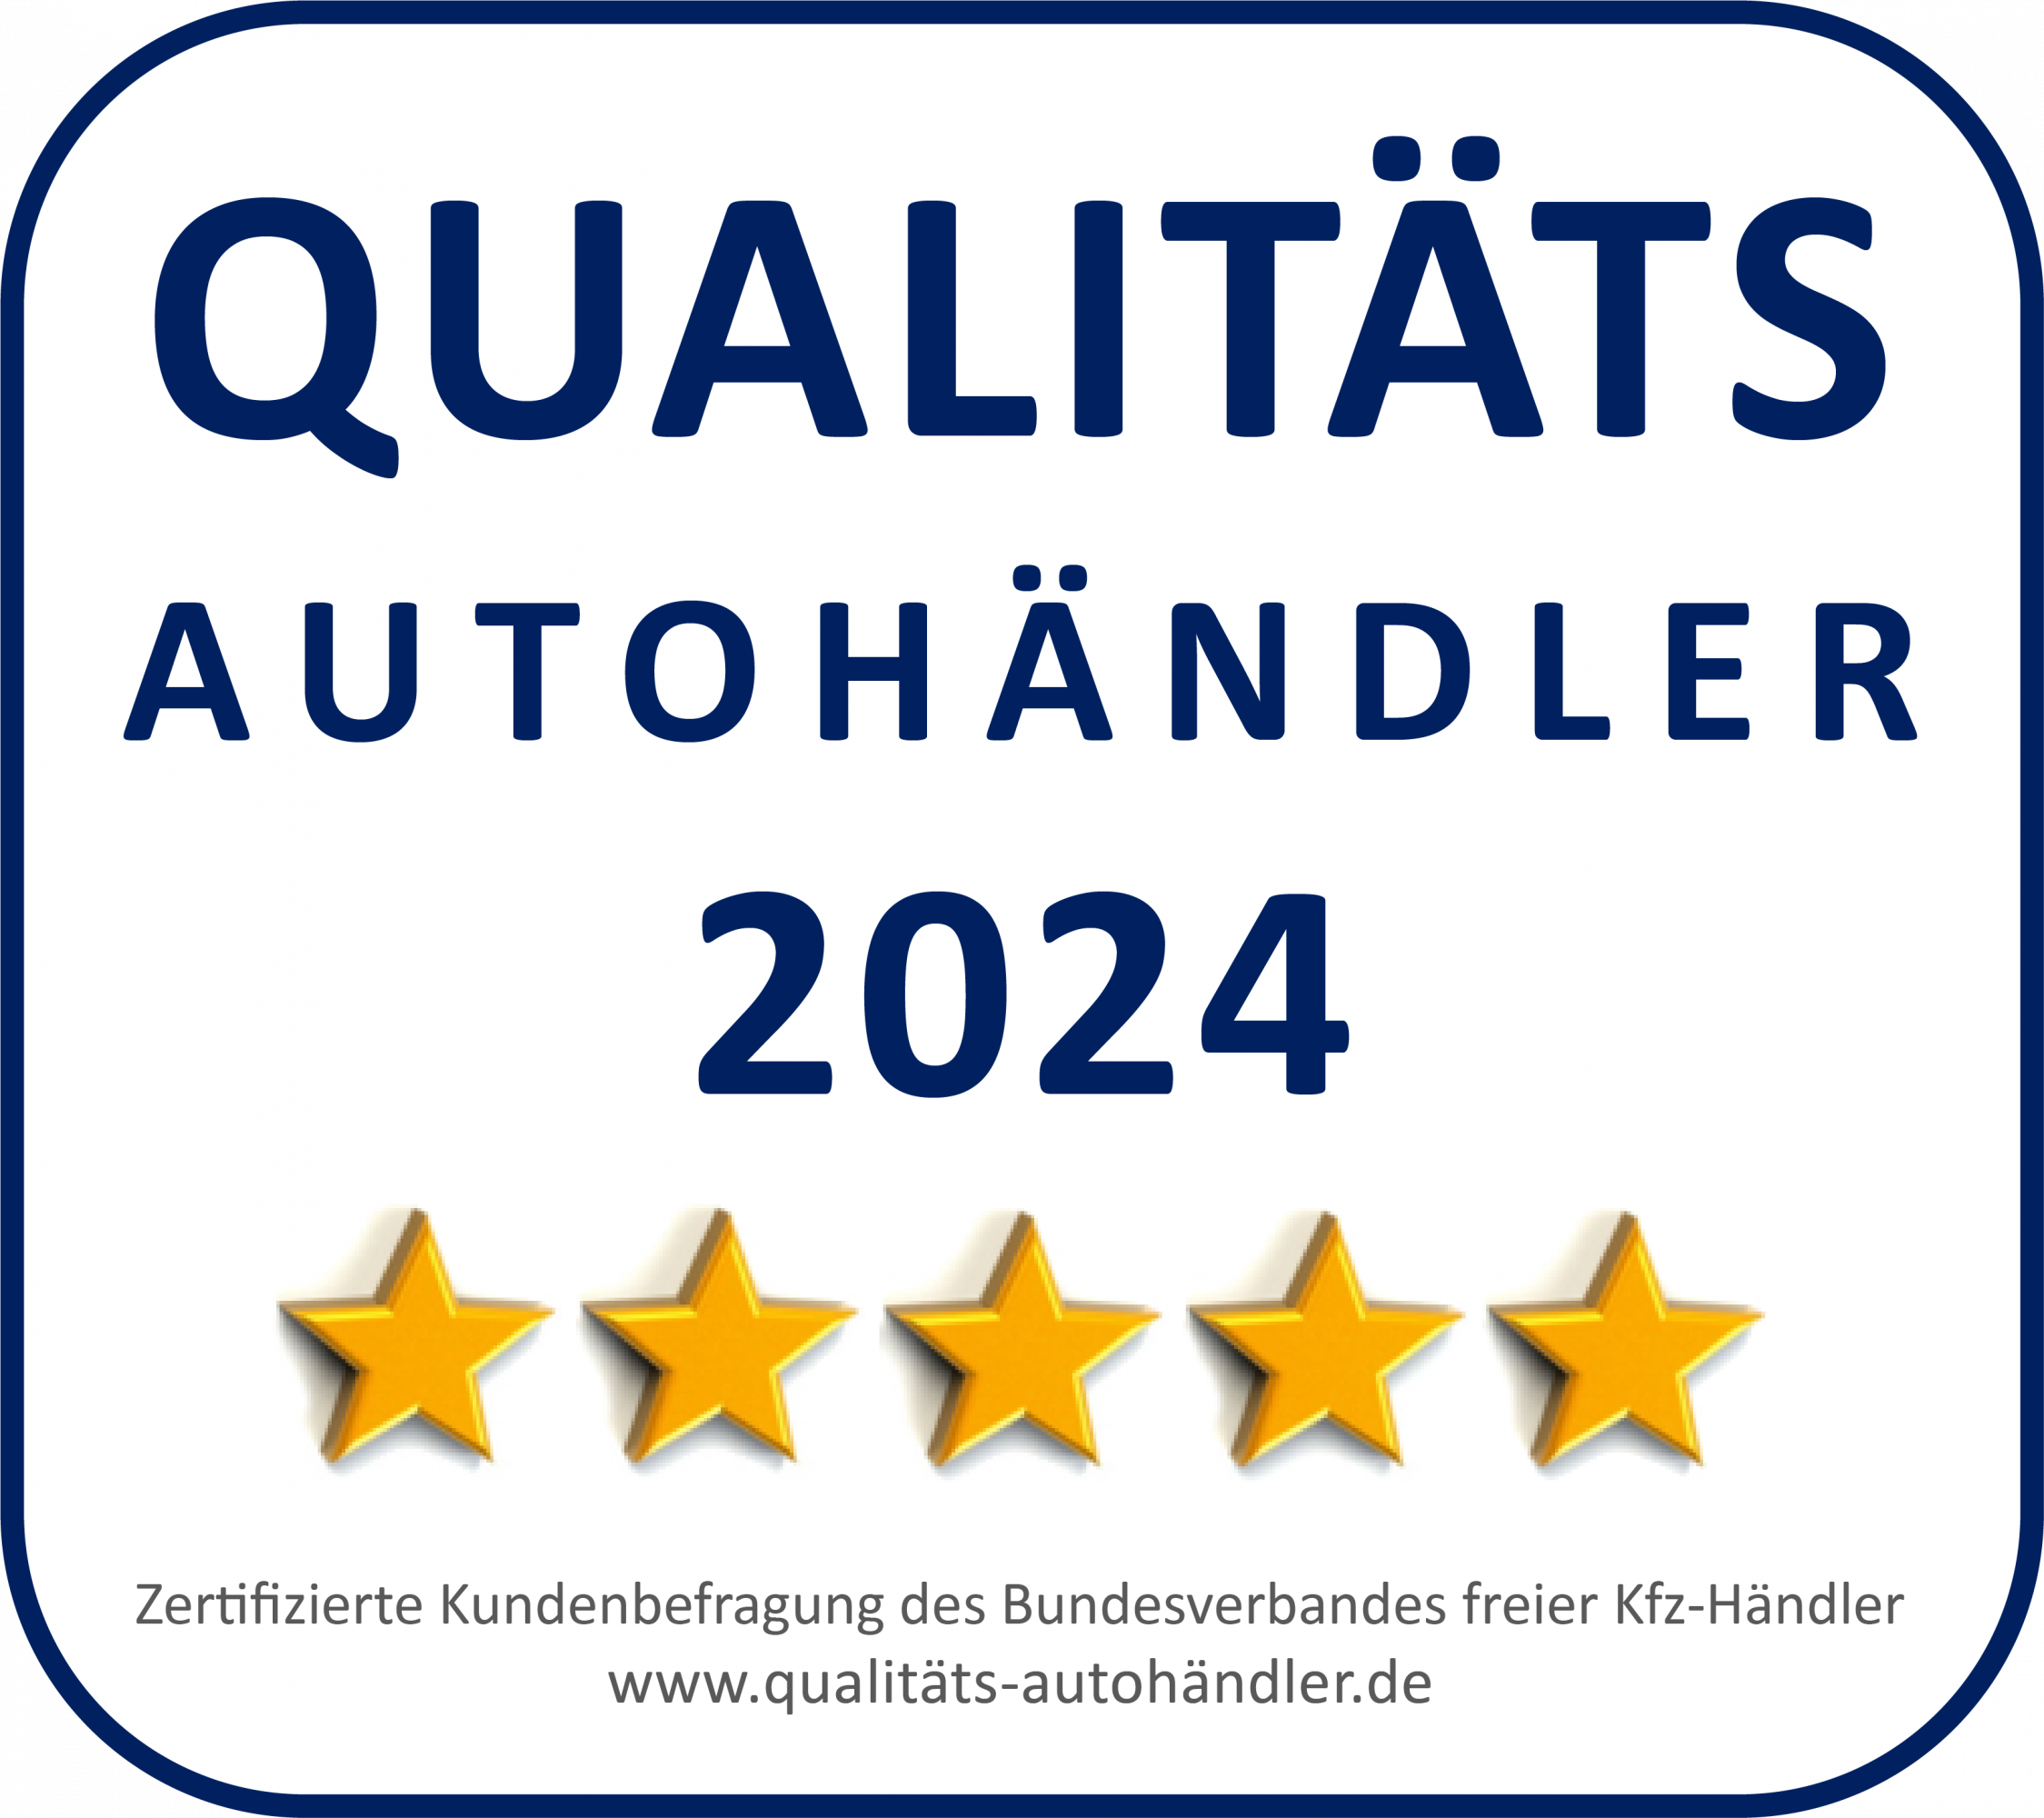 Qualitäts-Autohändler 2024